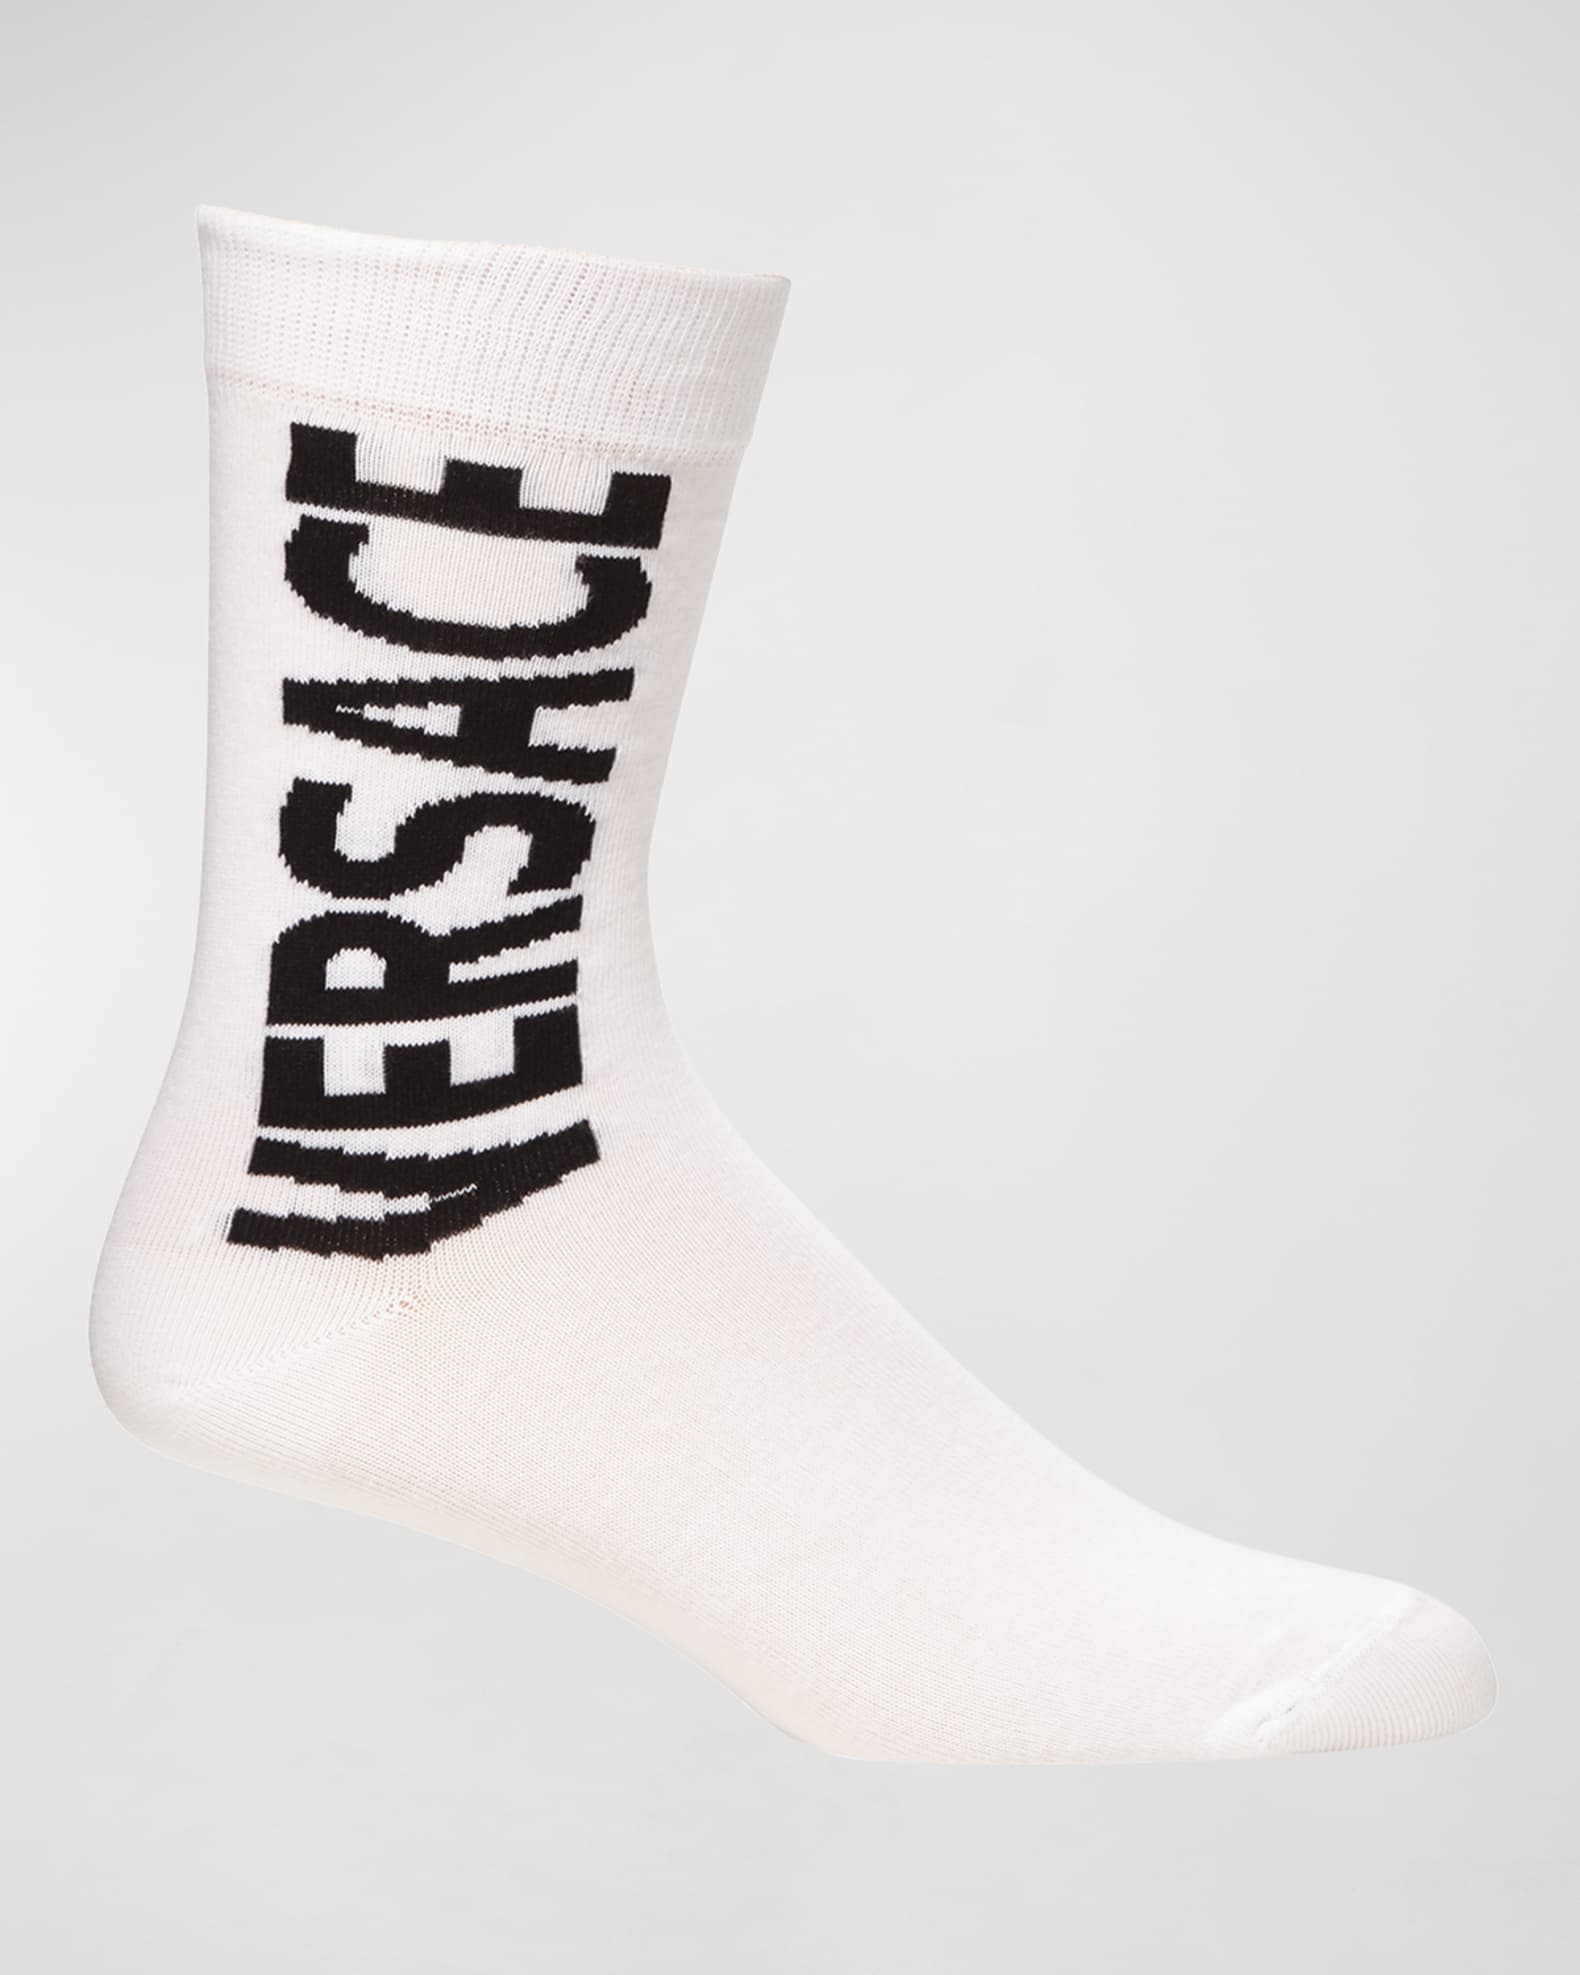 Versace Men's Logo Socks | Neiman Marcus